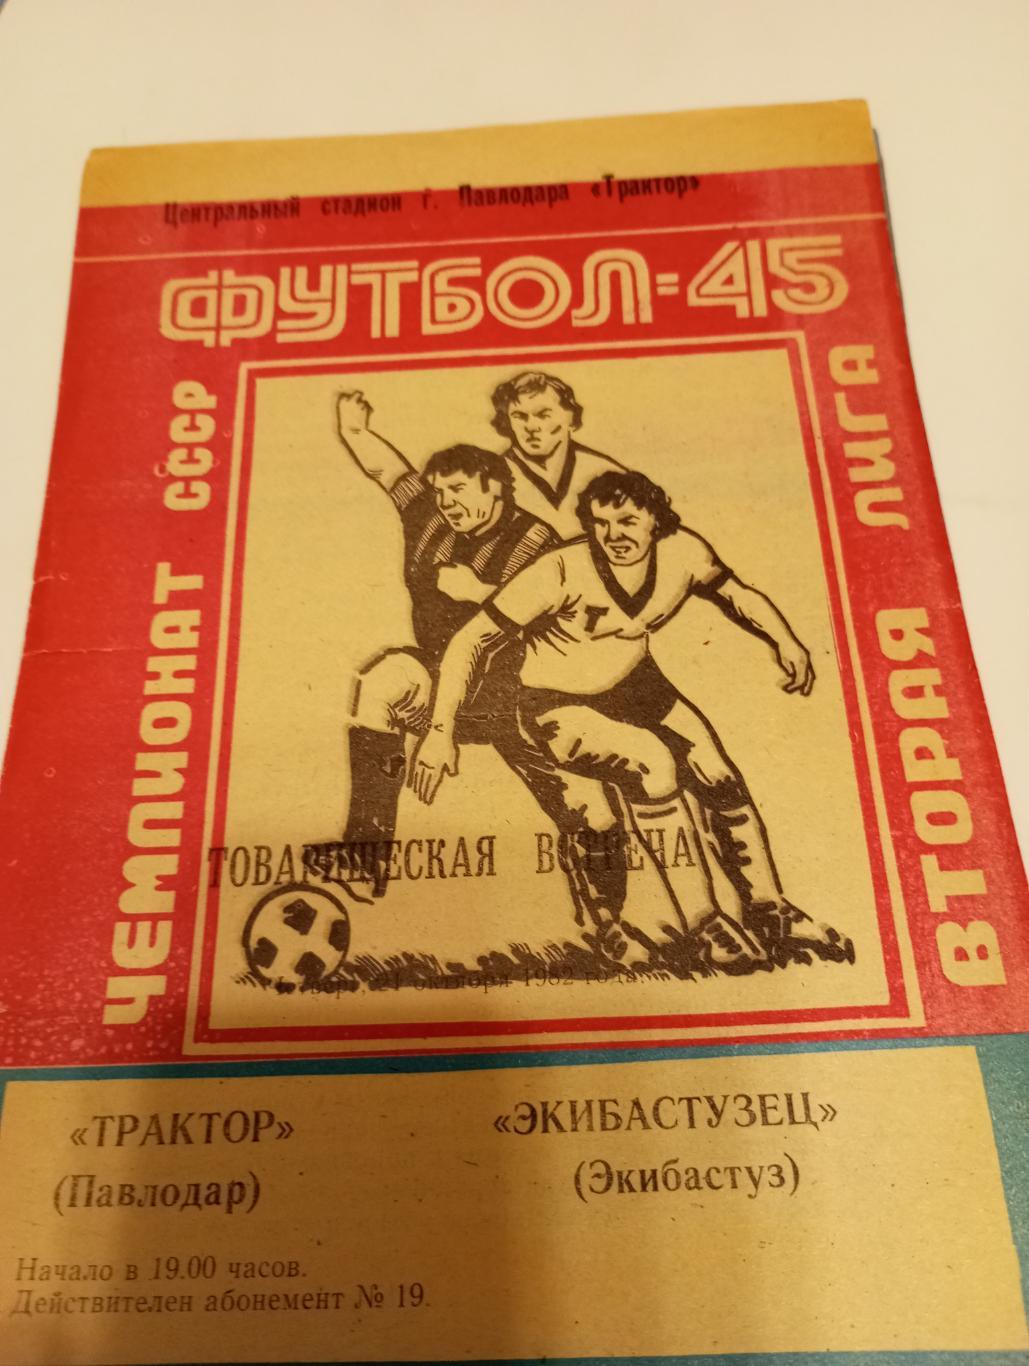 Трактор (Павлодар) - Экибастузец(Экибастуз). 1982 товарищеский матч